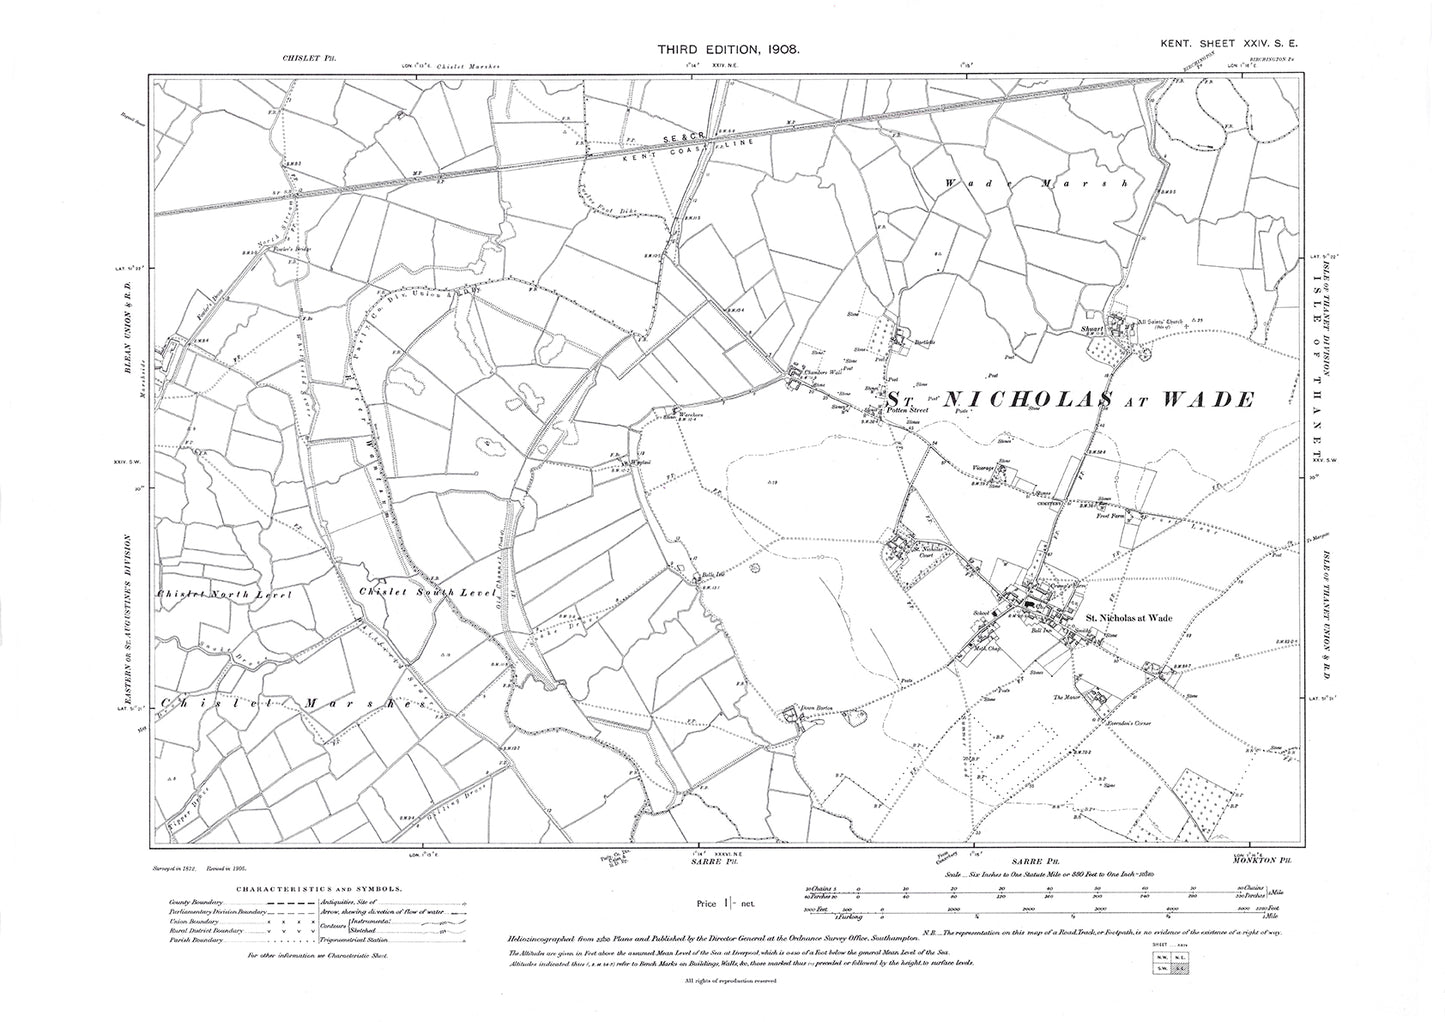 St Nicholas at Wade, old map Kent 1908: 24SE